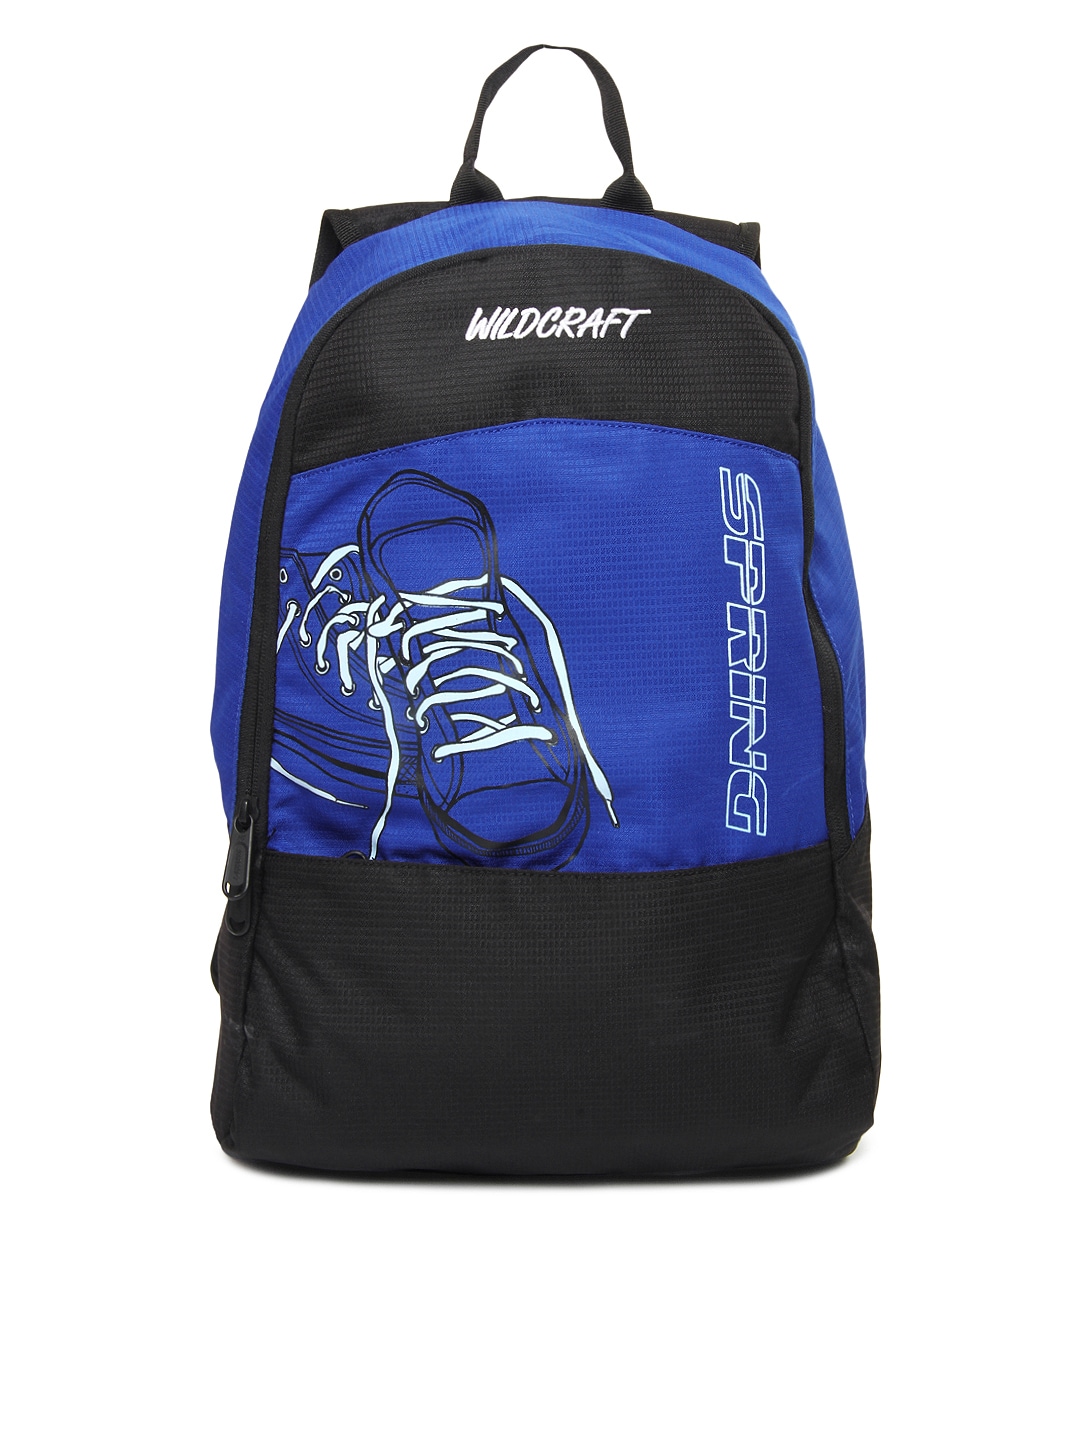 Wildcraft Men Blue & Black Backpack